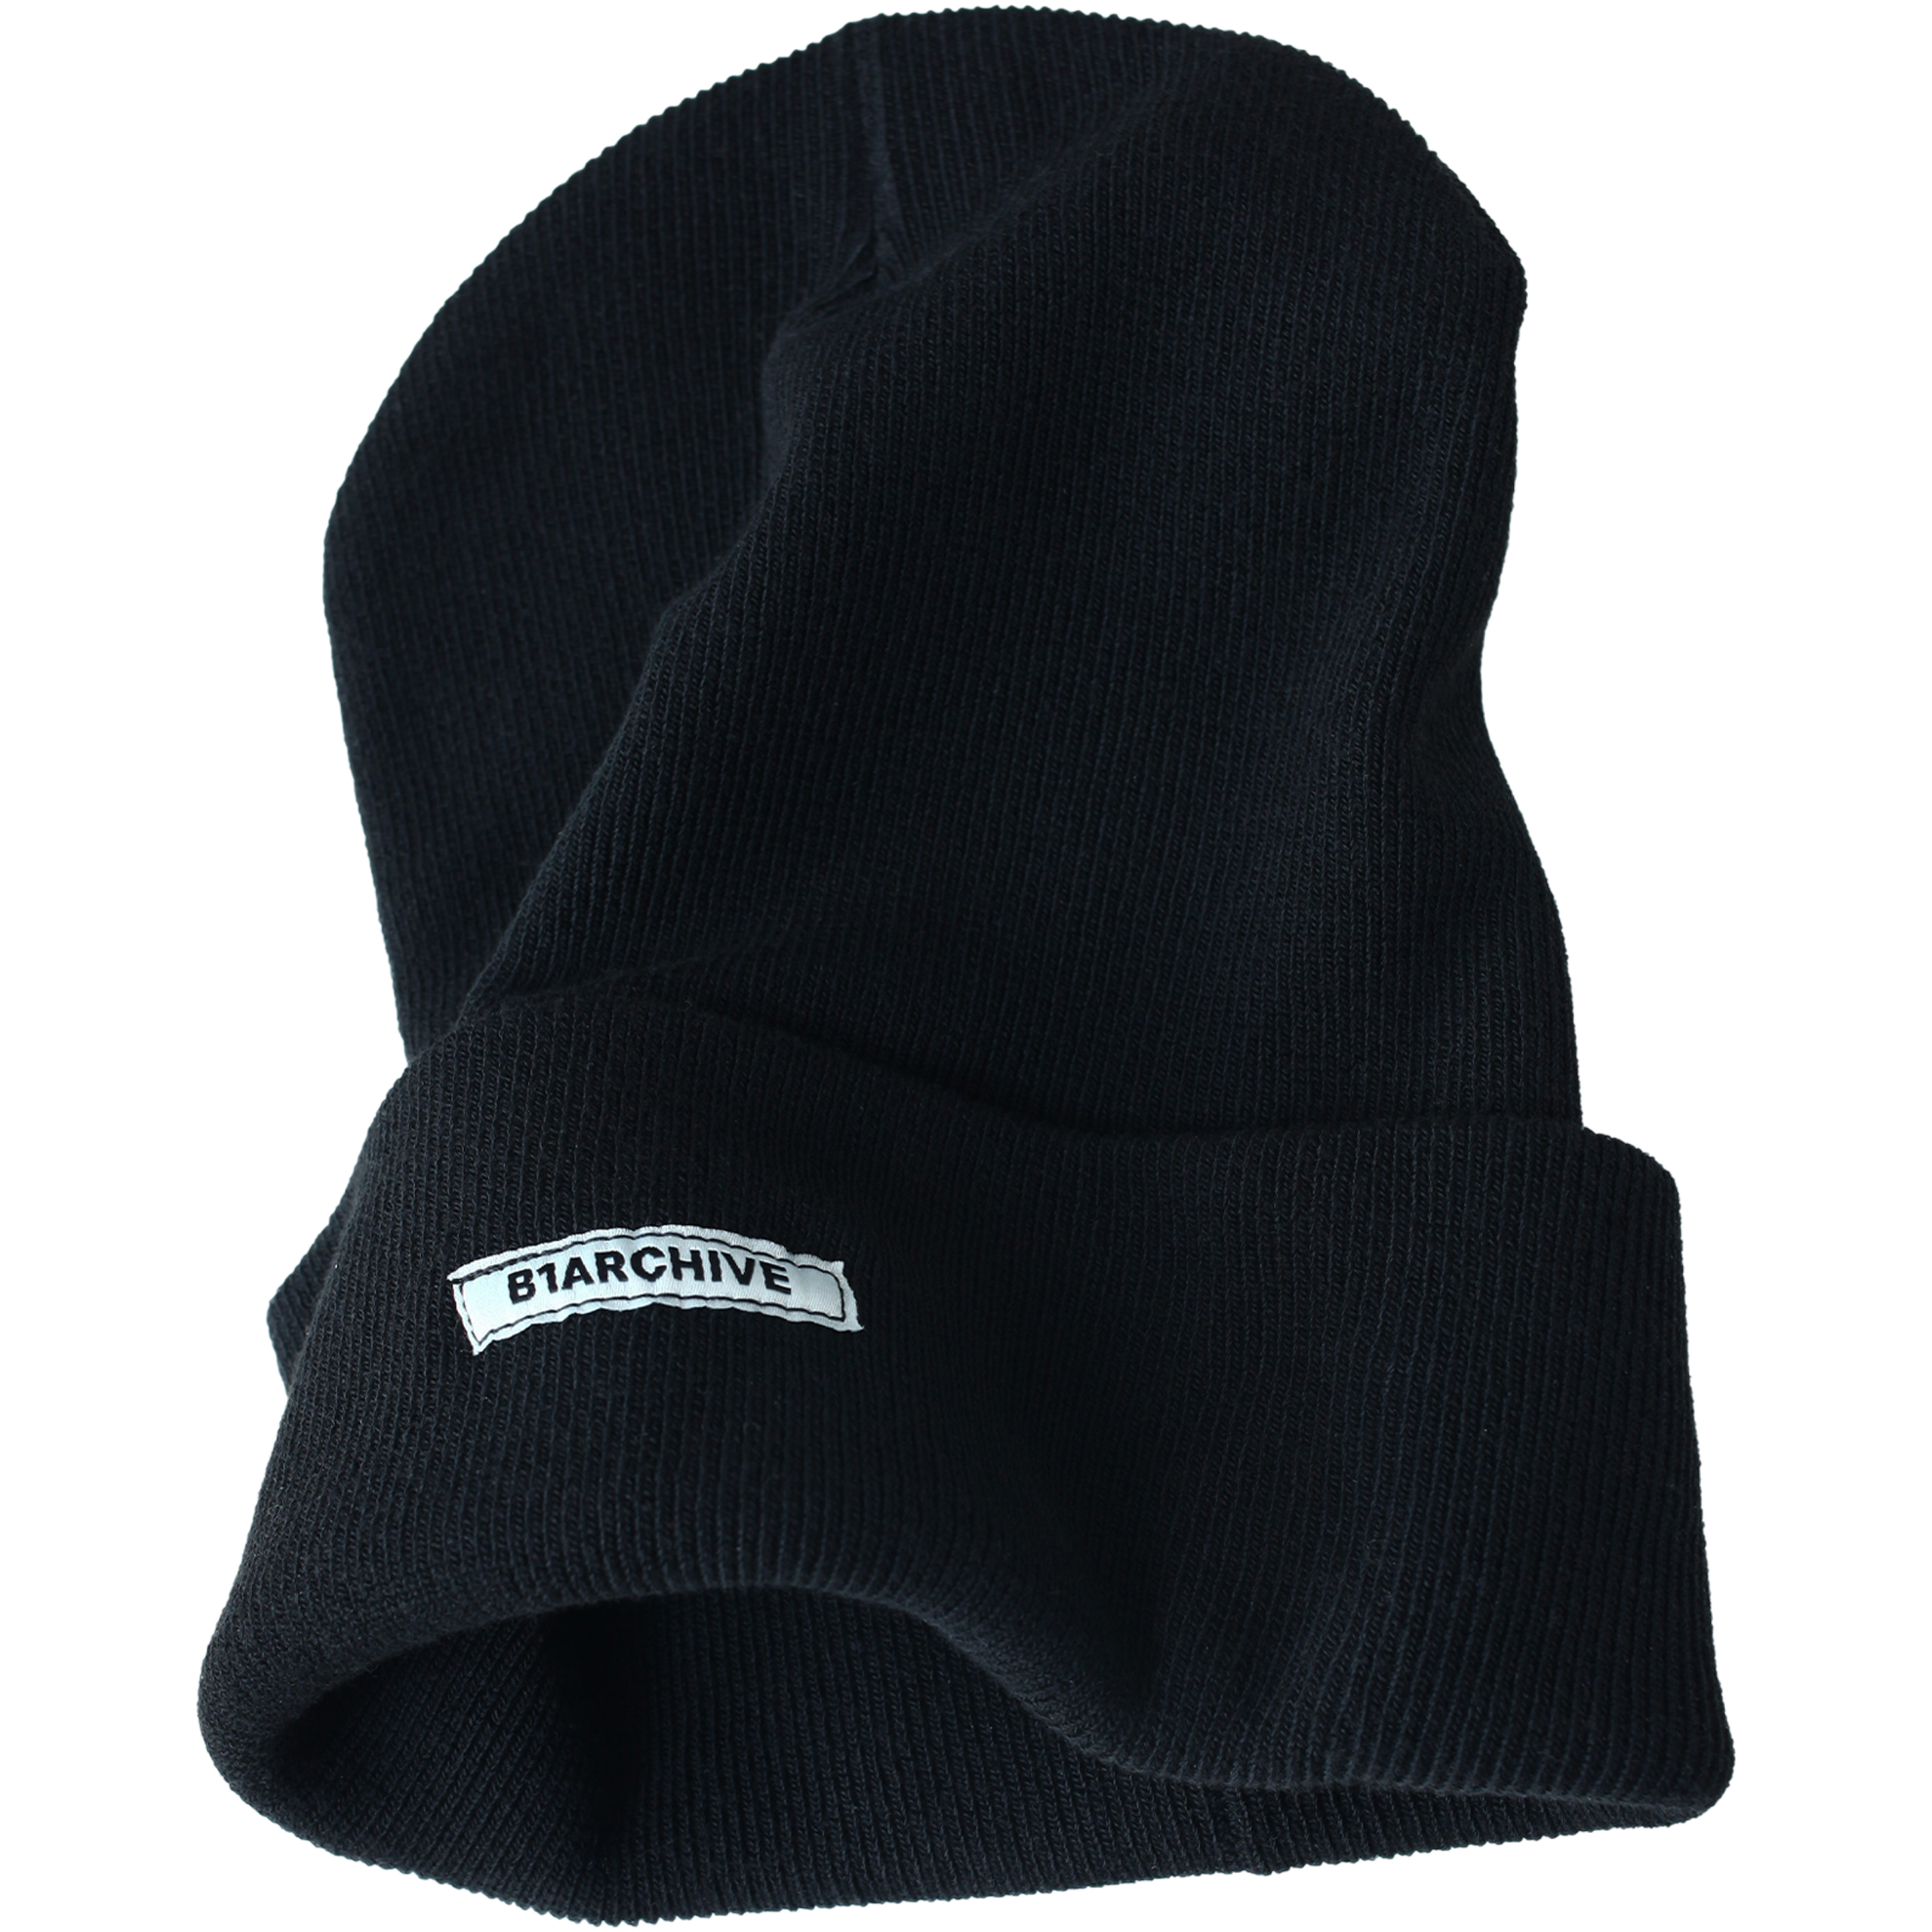 Черная шапка с подворотом B1ARCHIVE A001-1B1A0004-BLK, размер One Size - фото 1